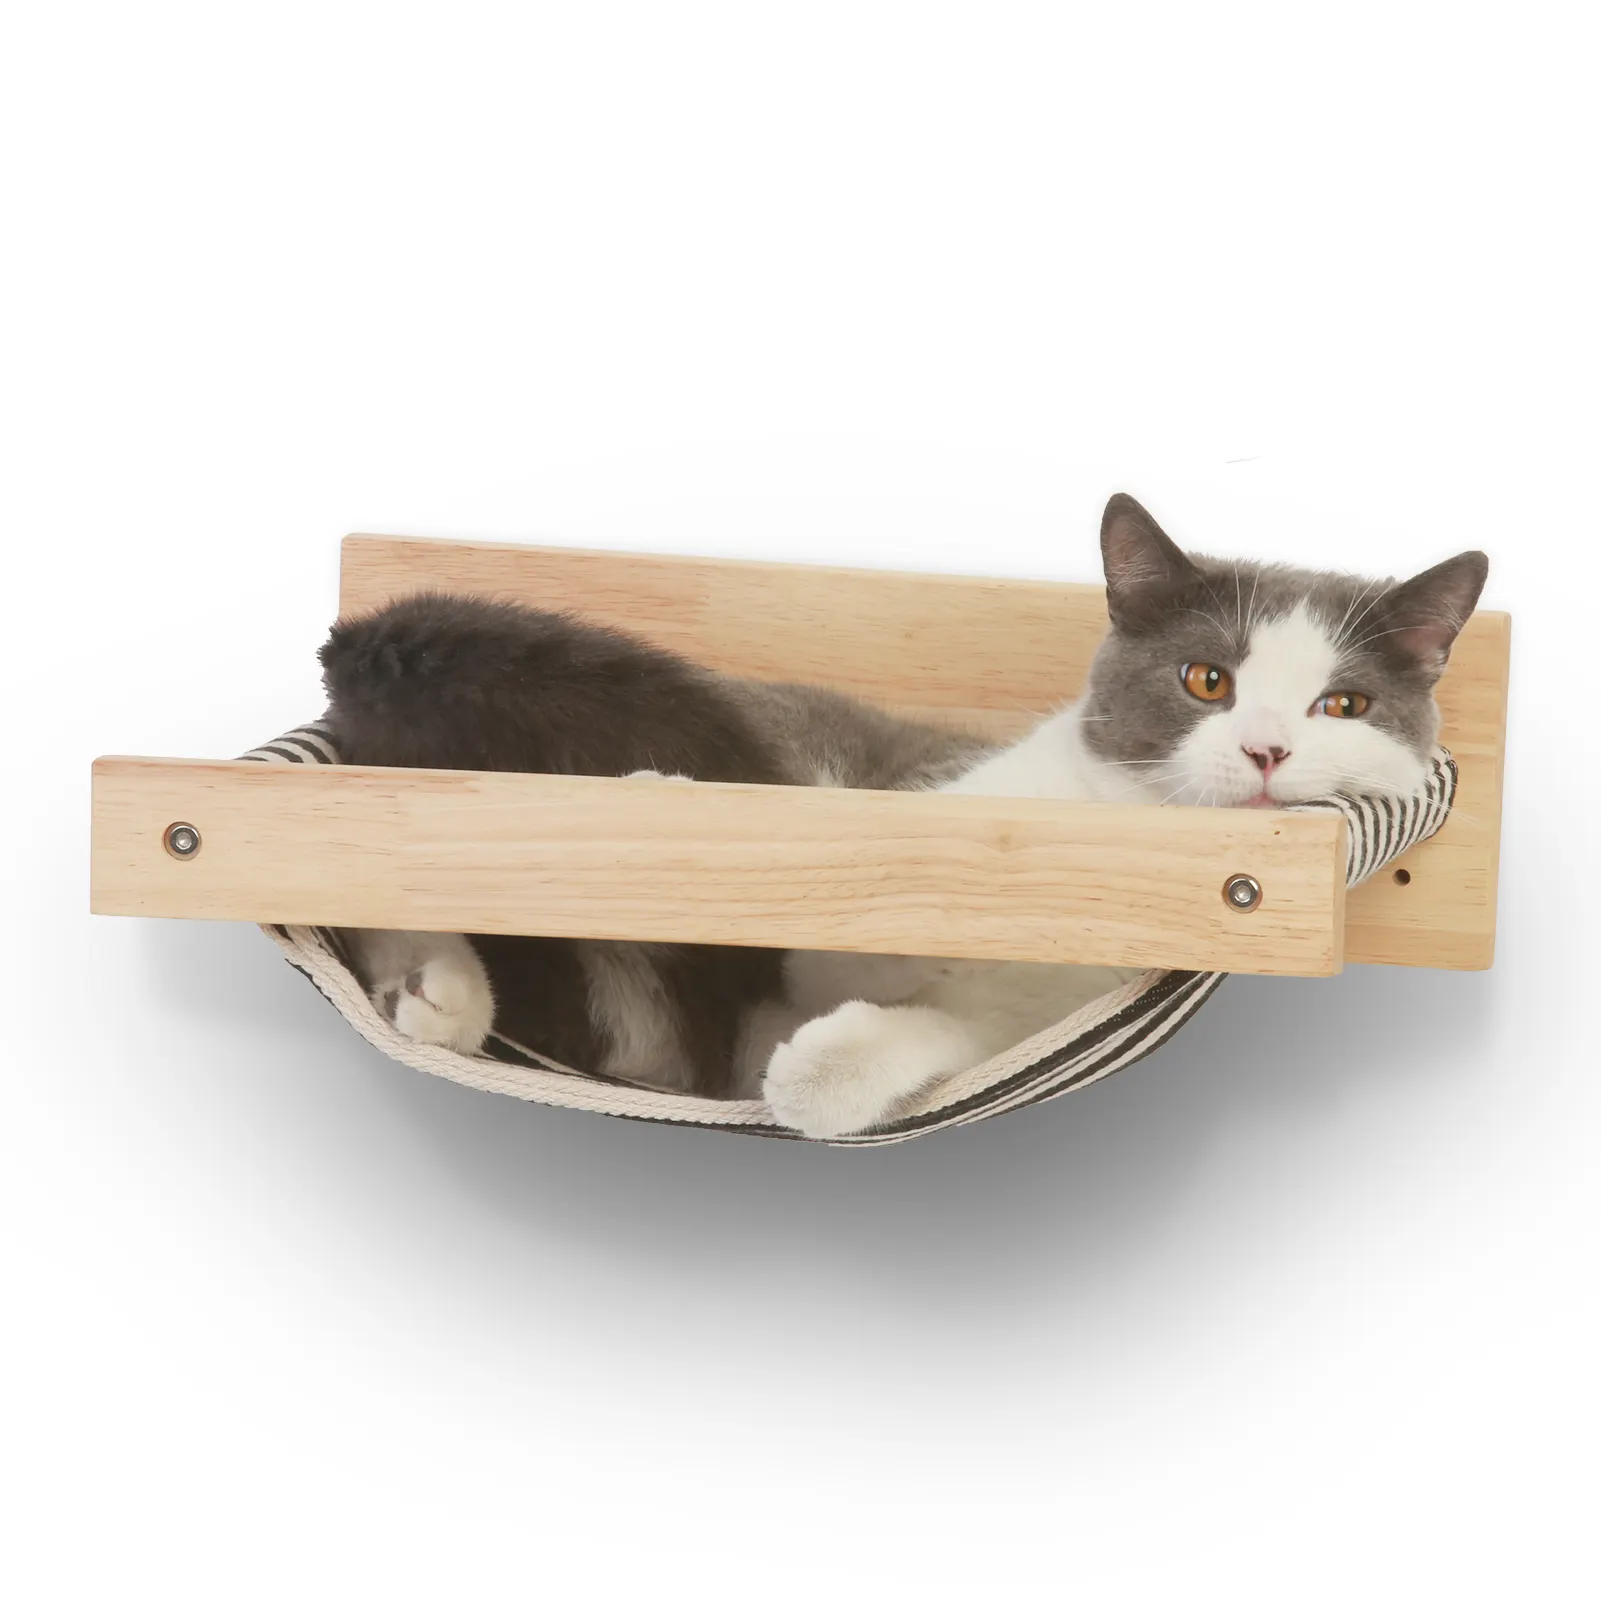 FUKUMARU chat hamac mural Kitty lits et perchoirs en bois chat mur meubles stable chat mur étagères pour dormir jouer